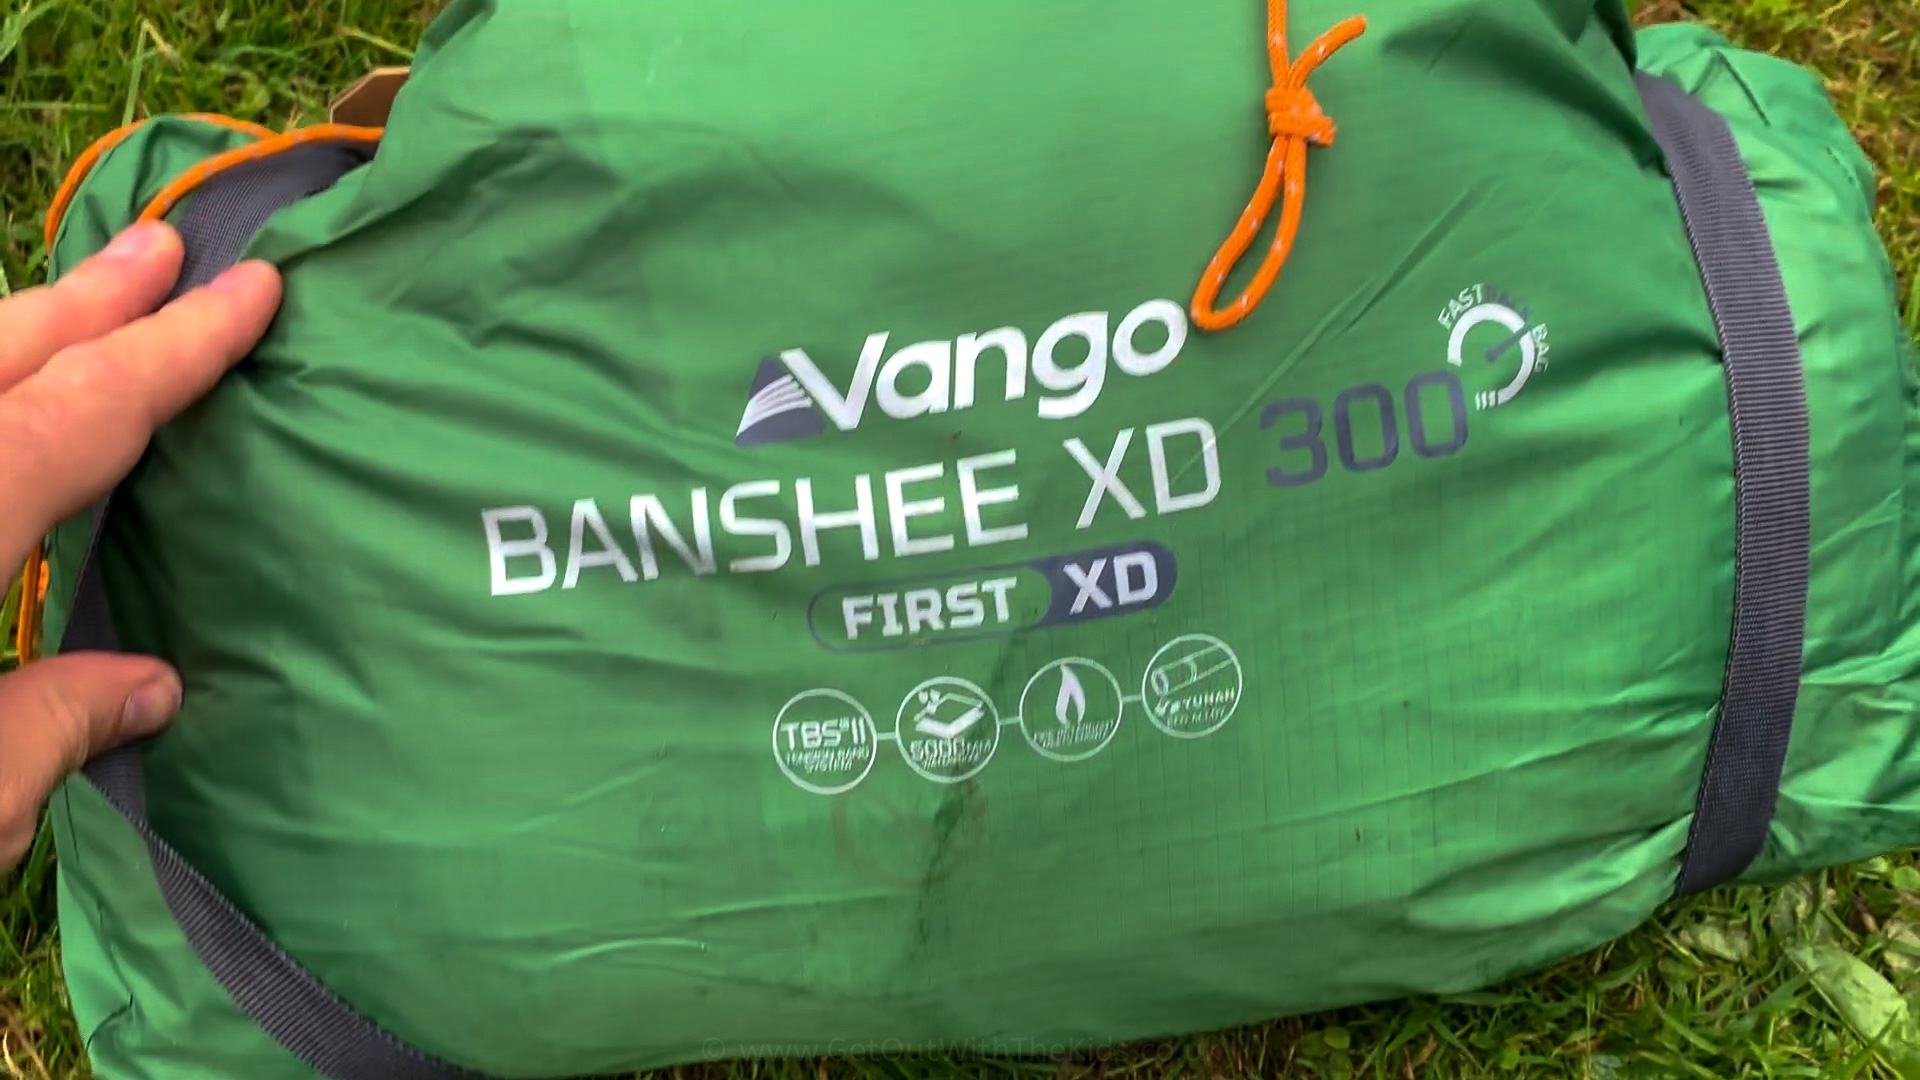 Vango Banshee XD tent in its bag